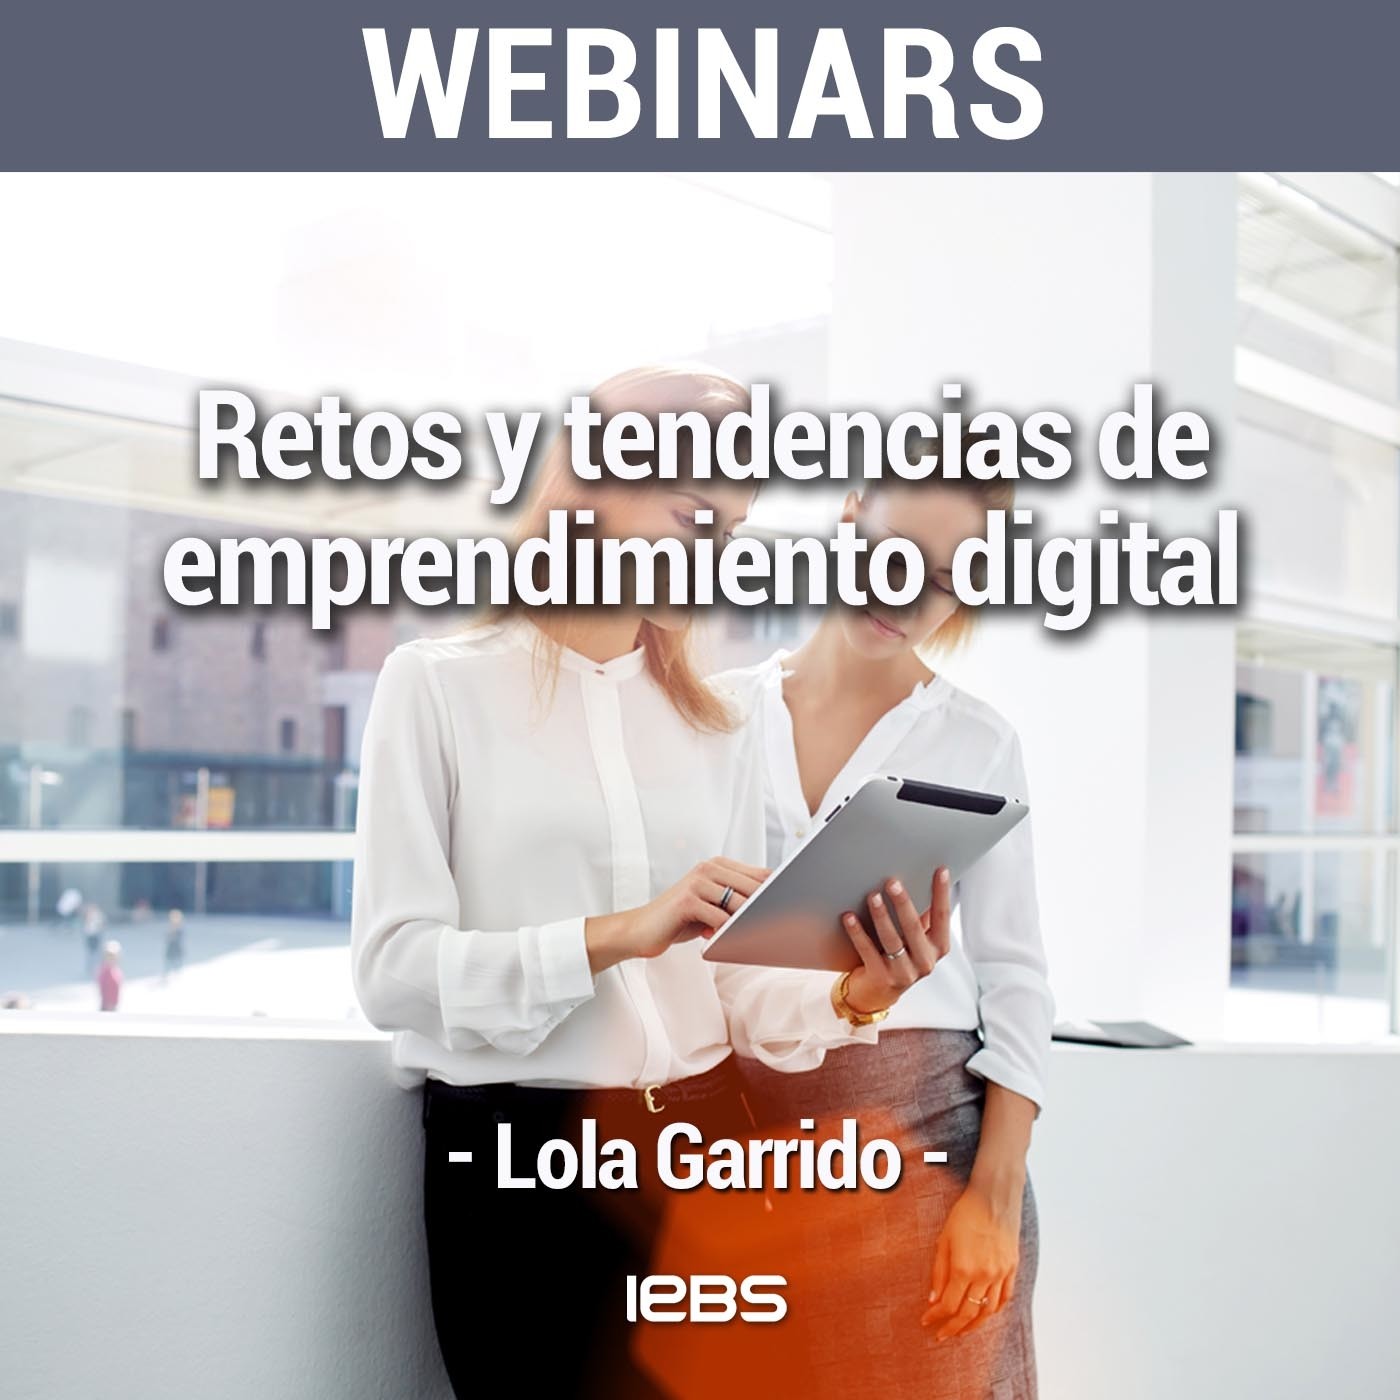 Webinar "Retos y tendencias de emprendimiento digital" de Akademus from IEBS